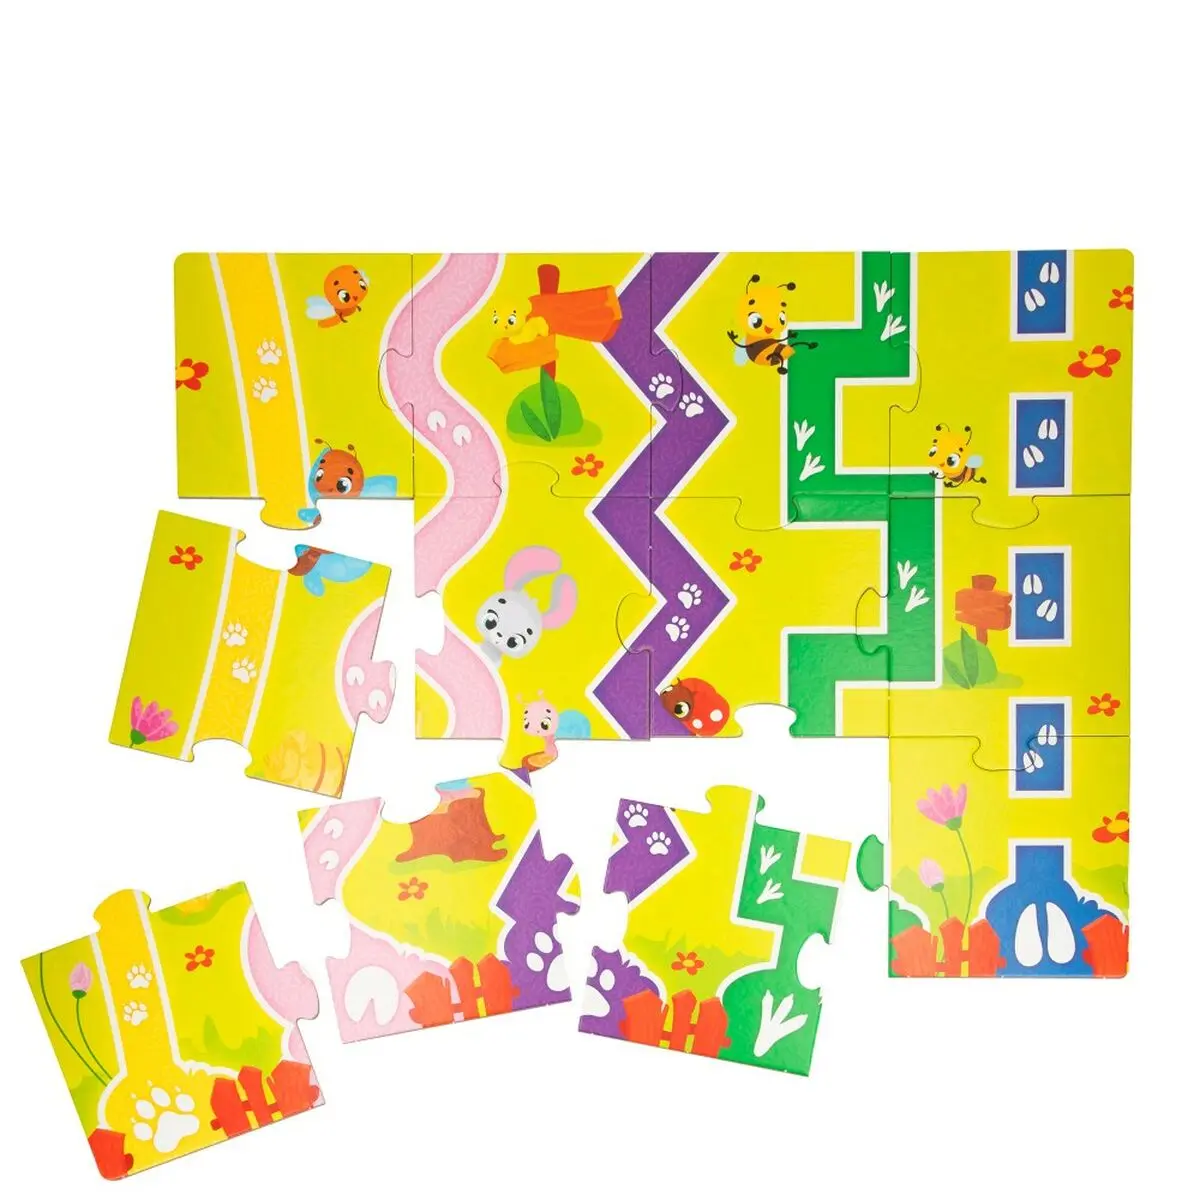 Puzzle per Bambini Lisciani Fattoria 27 Pezzi 48 x 1 x 36 cm (6 Unità)